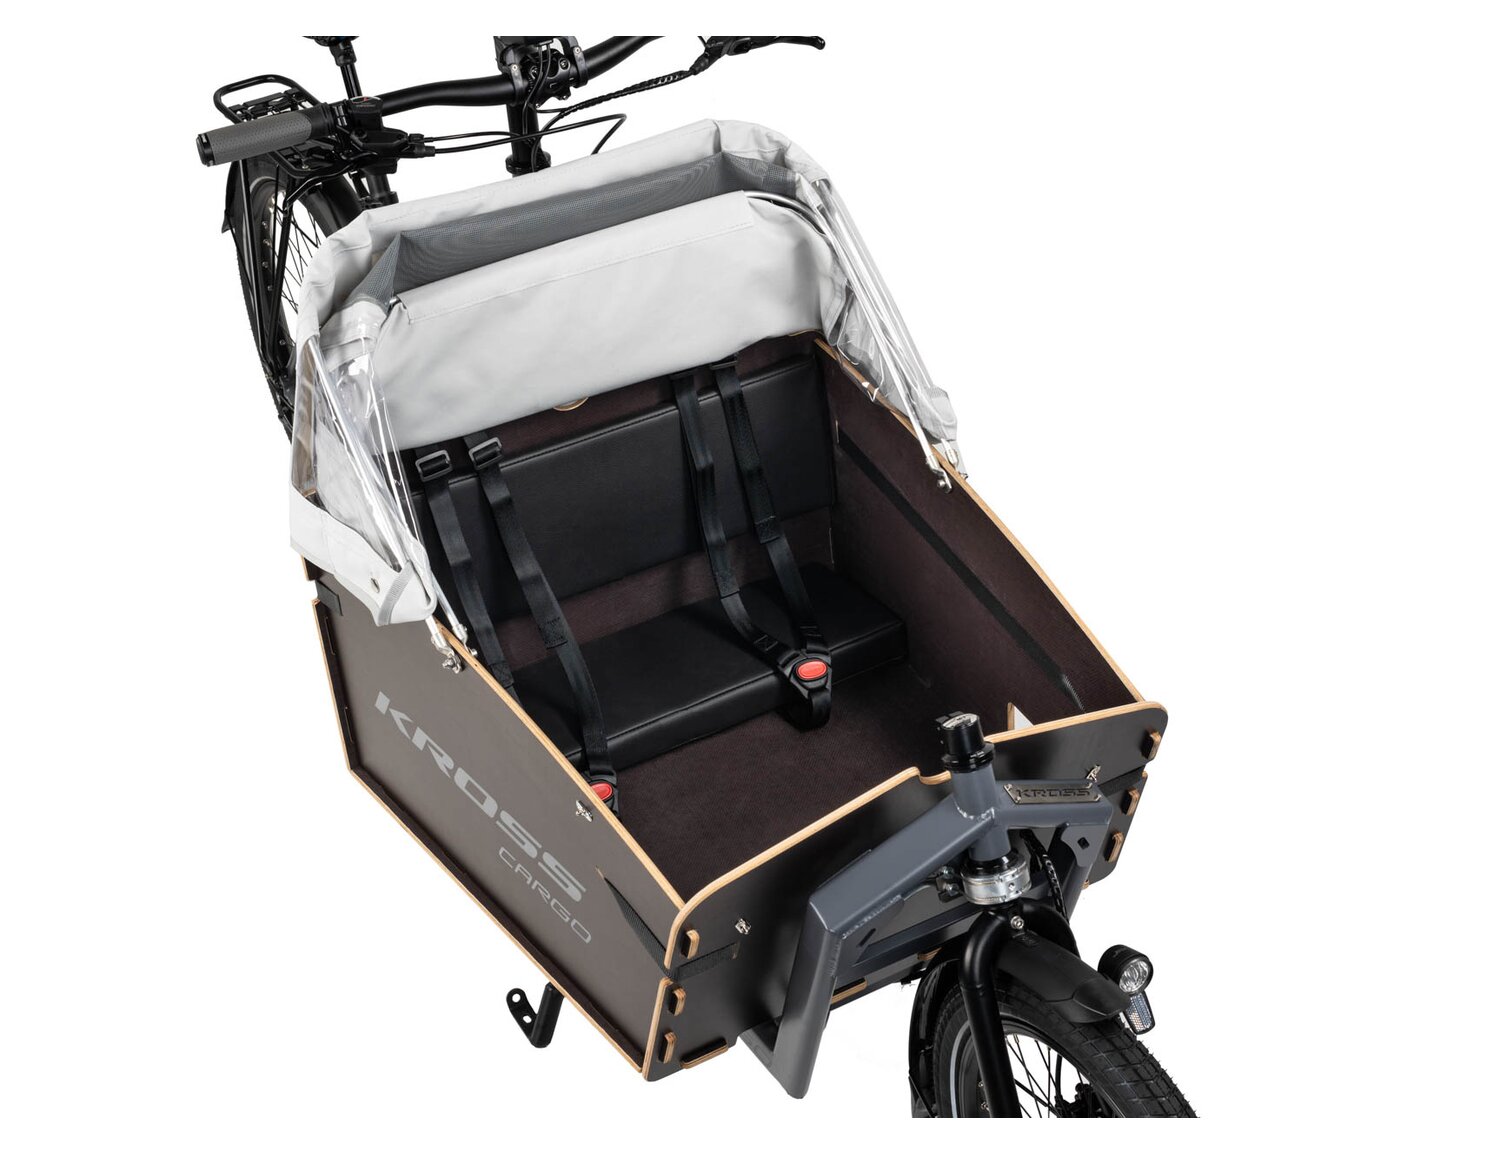  Skrzynia z siedziskiem dla dziecka w rowerze elektrycznym cargo Ebike KROSS E-Cargo 1.0 Family 